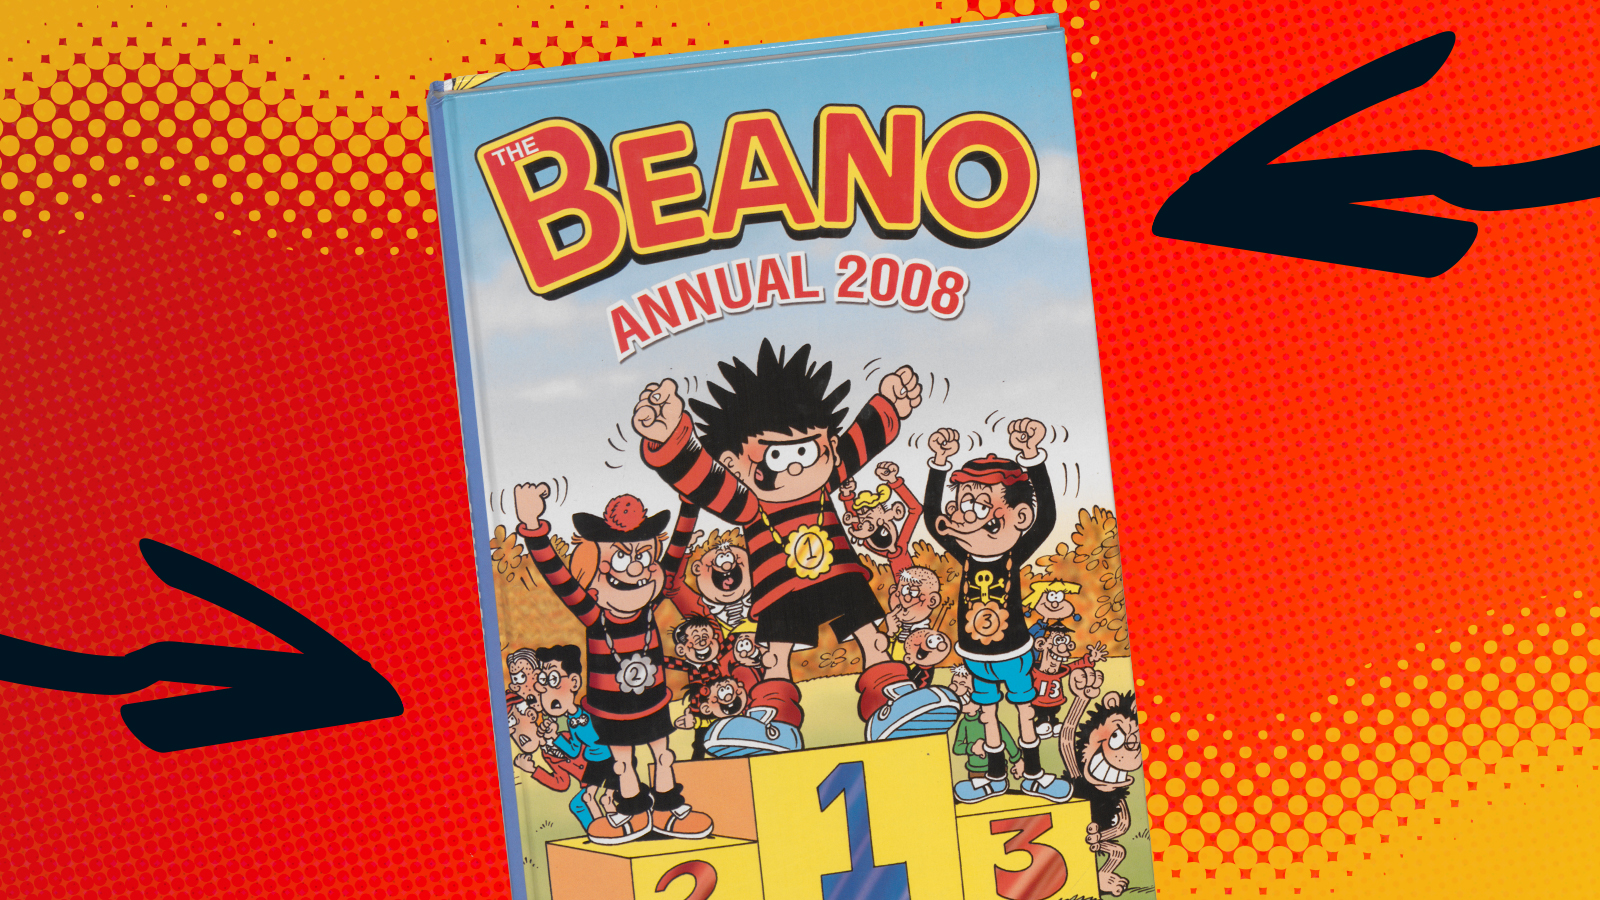 Beano Annual 2008